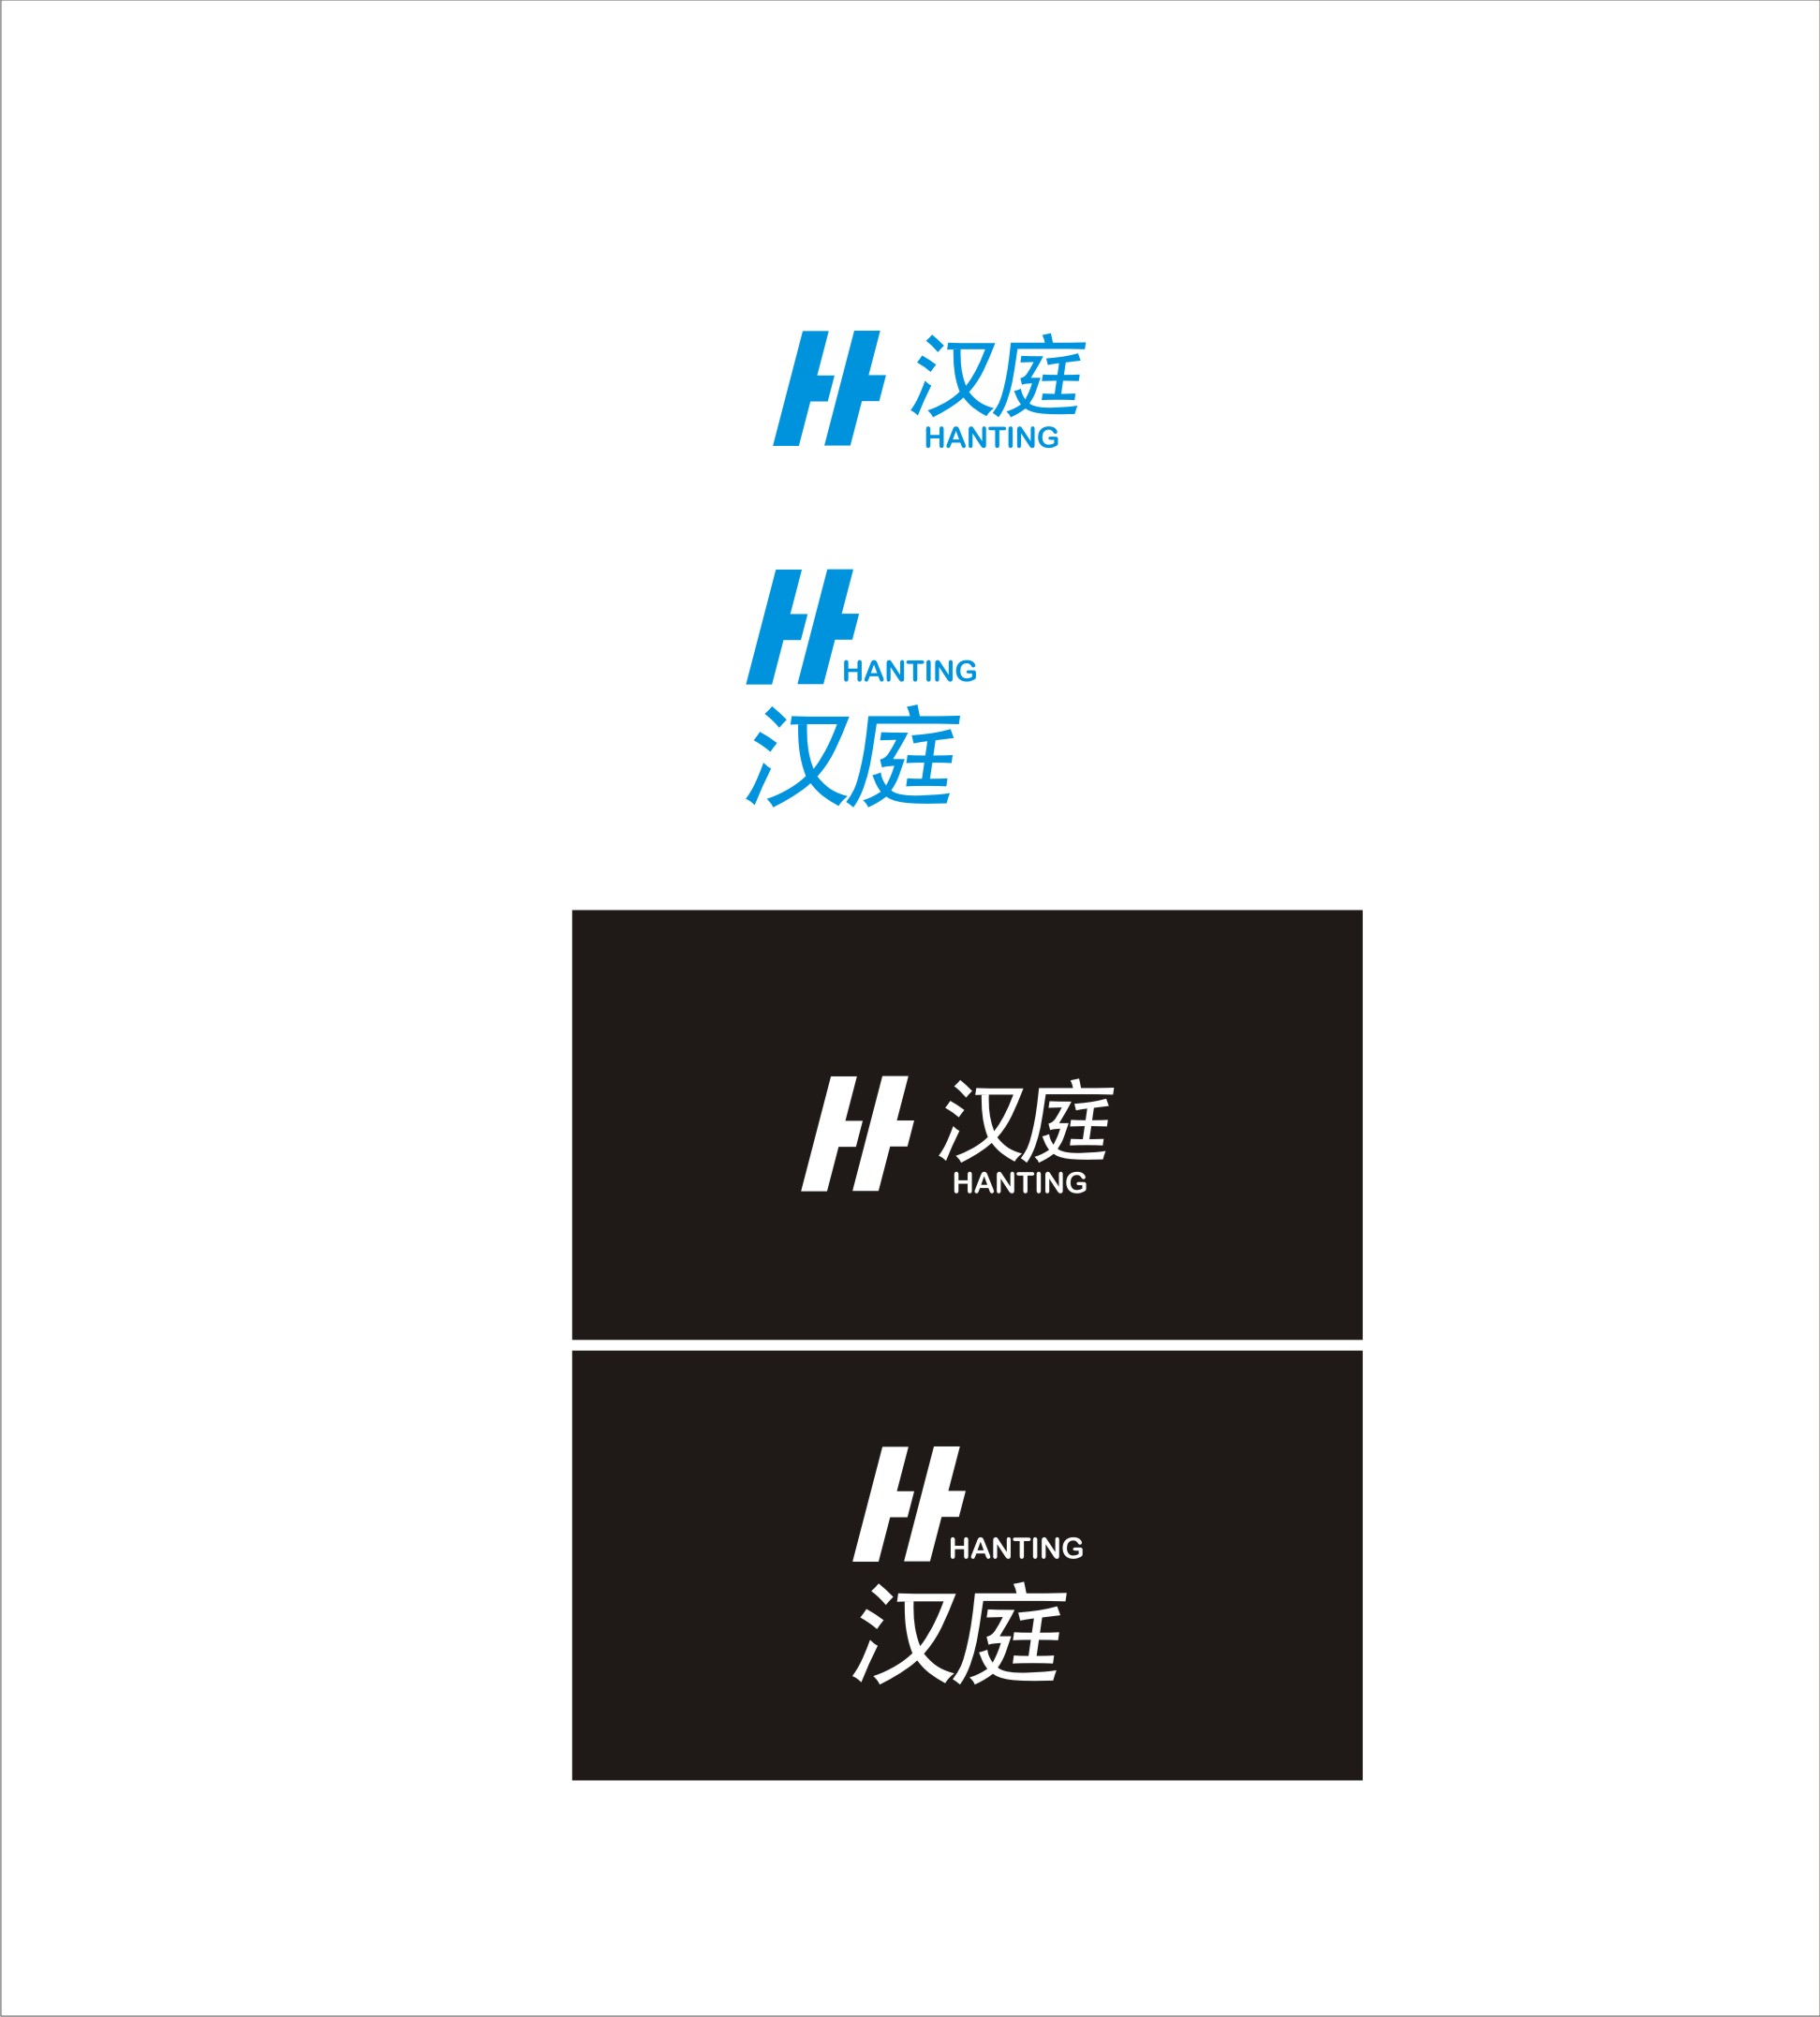 汉庭logo含义图片